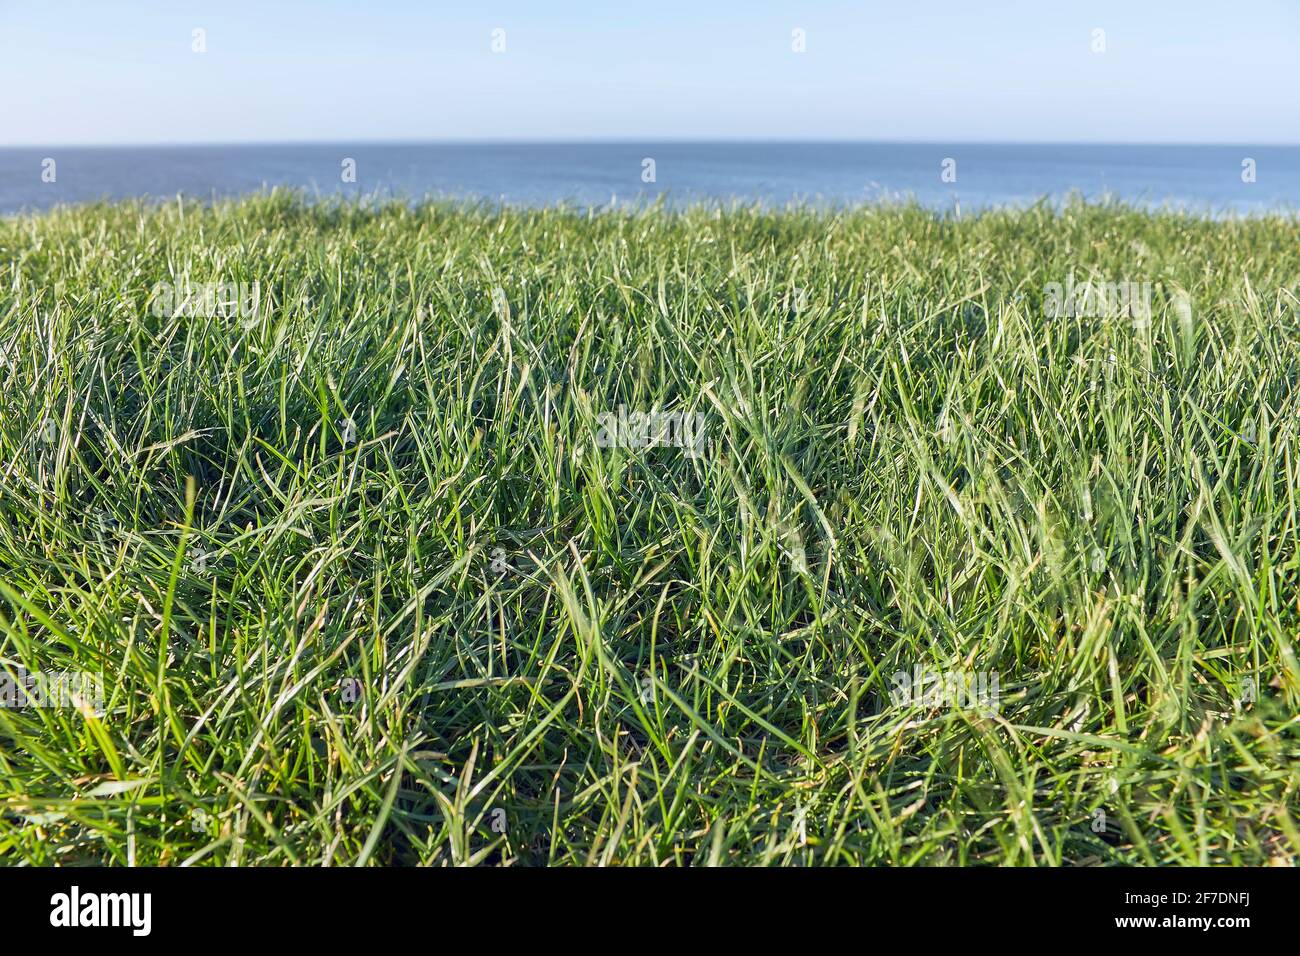 Photo abstraite de l'herbe, de la mer et du ciel en trois couches horizontales aux couleurs saturées. Image avec espace de copie et mise au point sélective. Banque D'Images